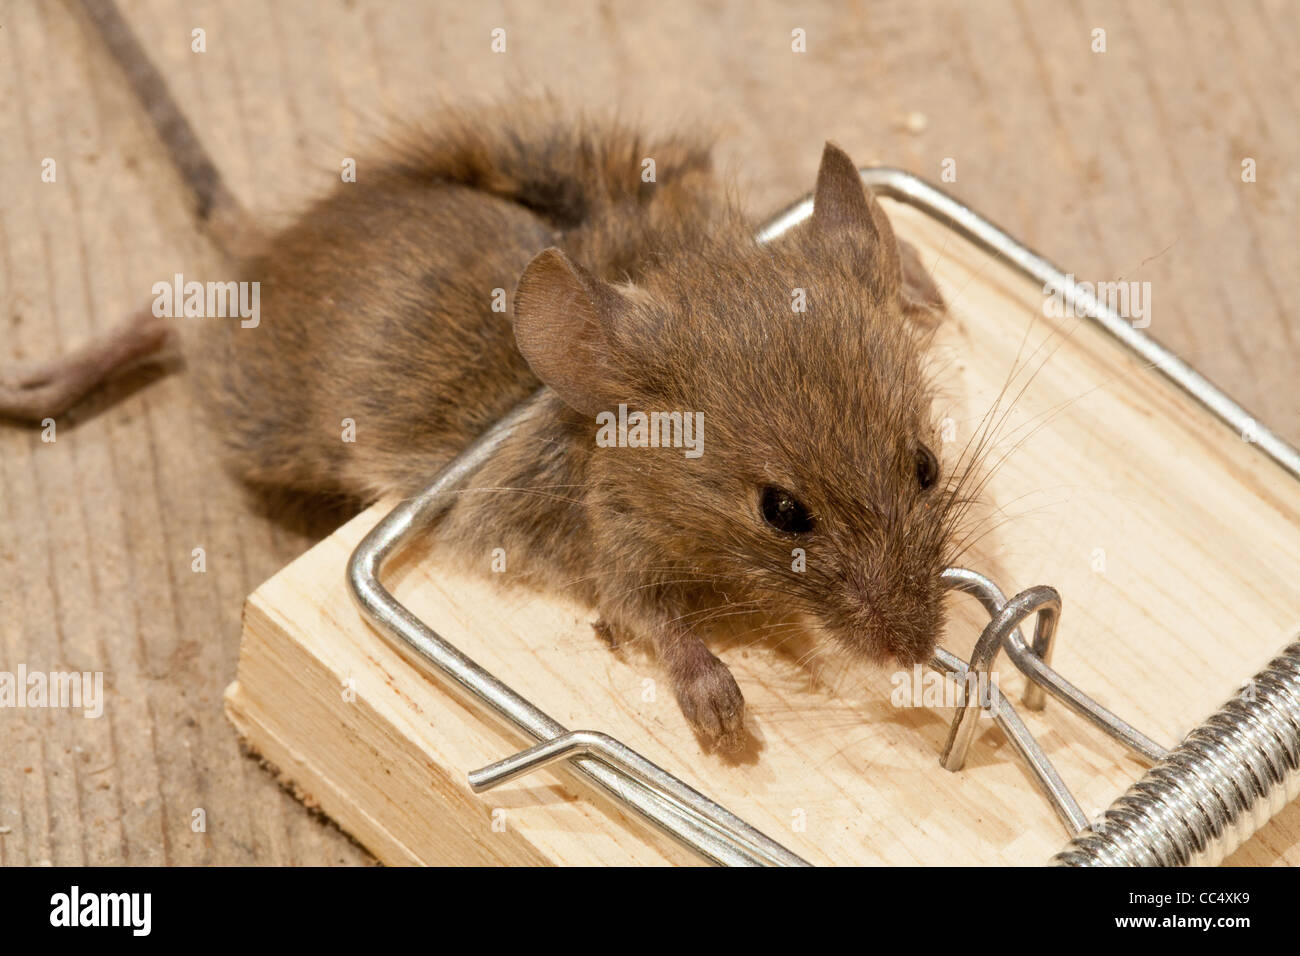 Dead mouse dans piège à souris sur le plancher Banque D'Images